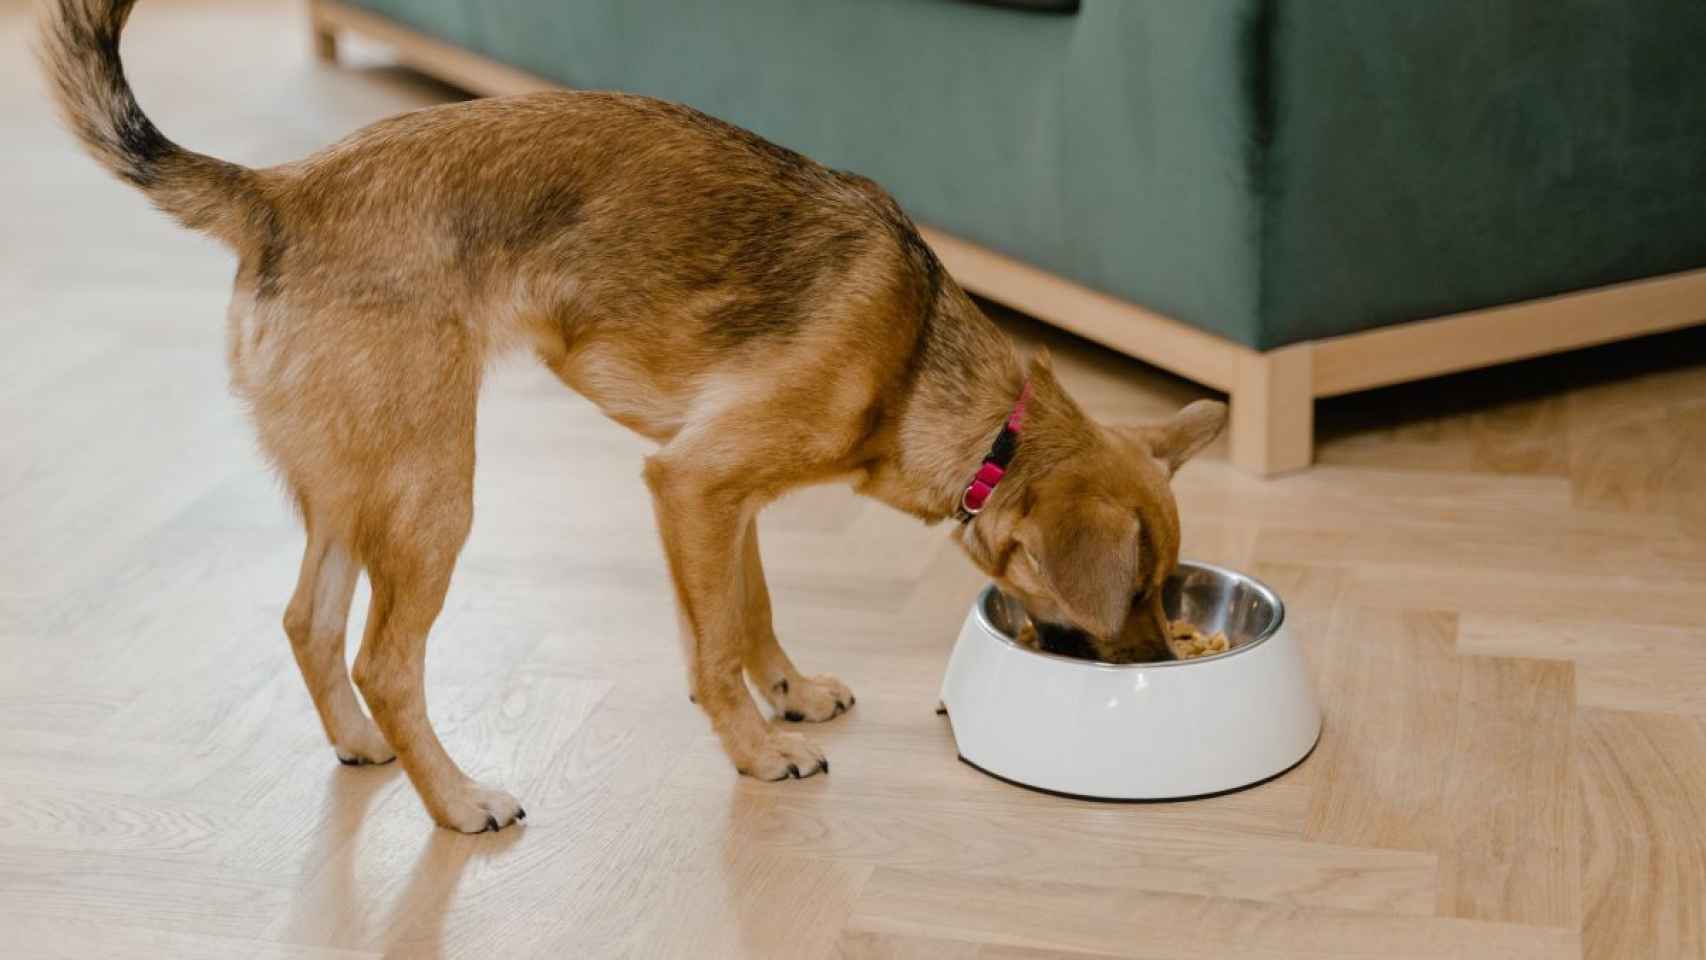 Los perros alimentados con probióticos y prebióticos mejoran su salud intestinal, según estudios sobre microbiota animal